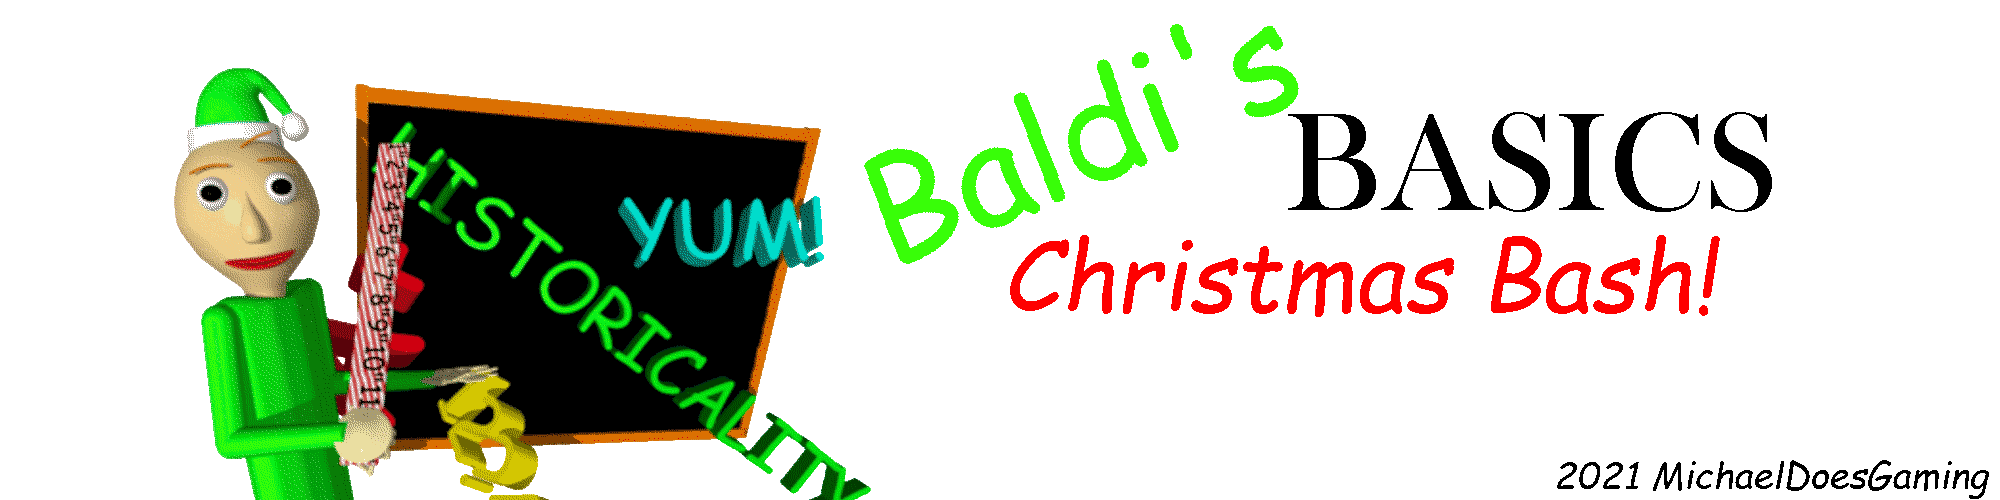 Baldi's basics christmas bash!